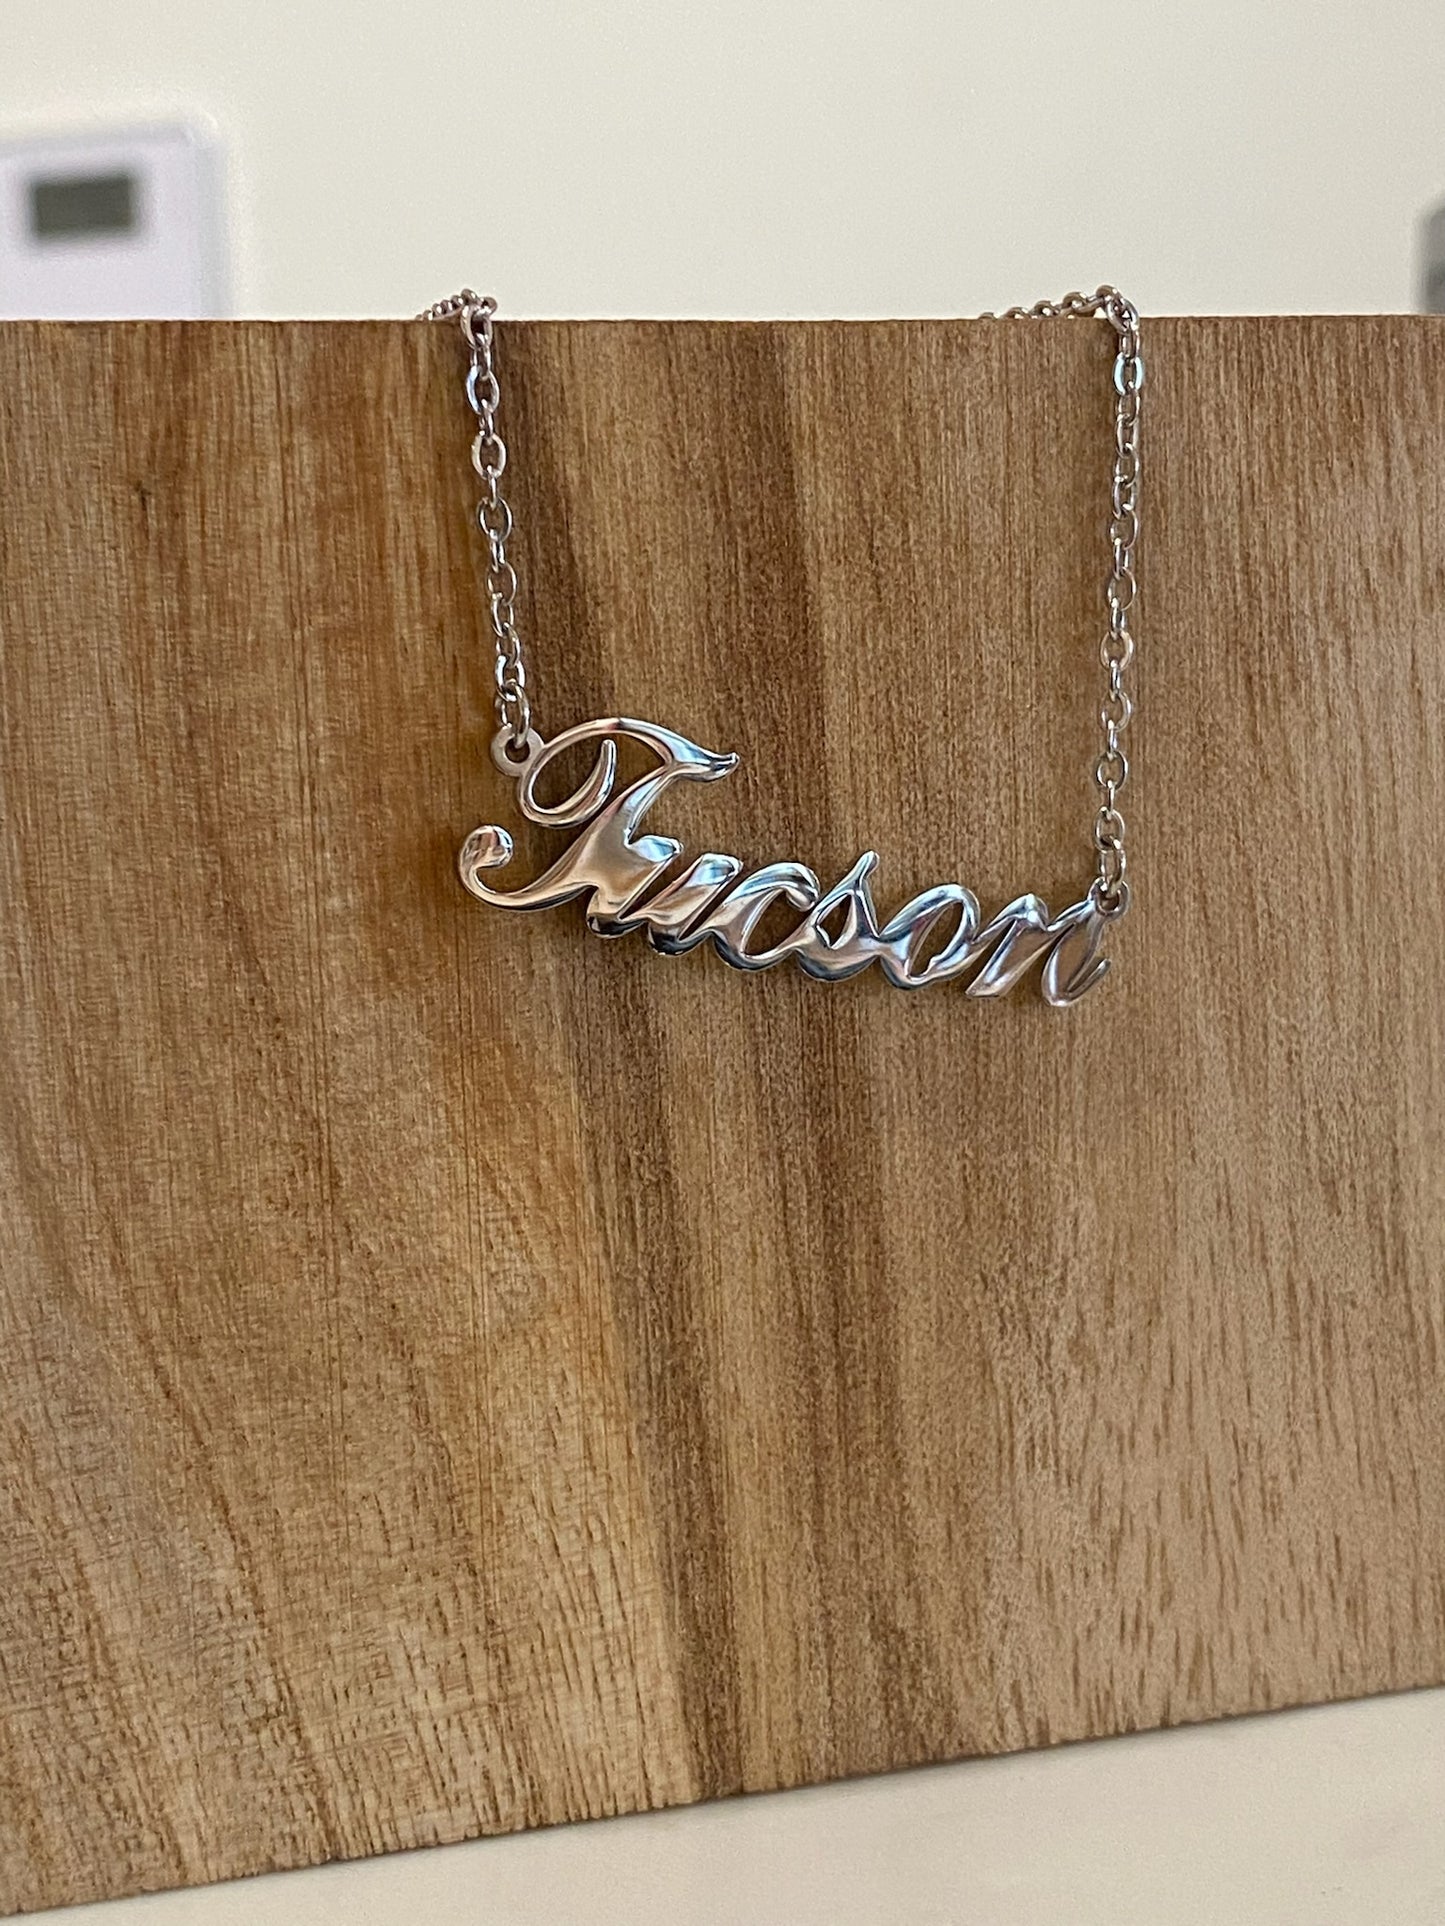 Tucson Script Necklace - Silver